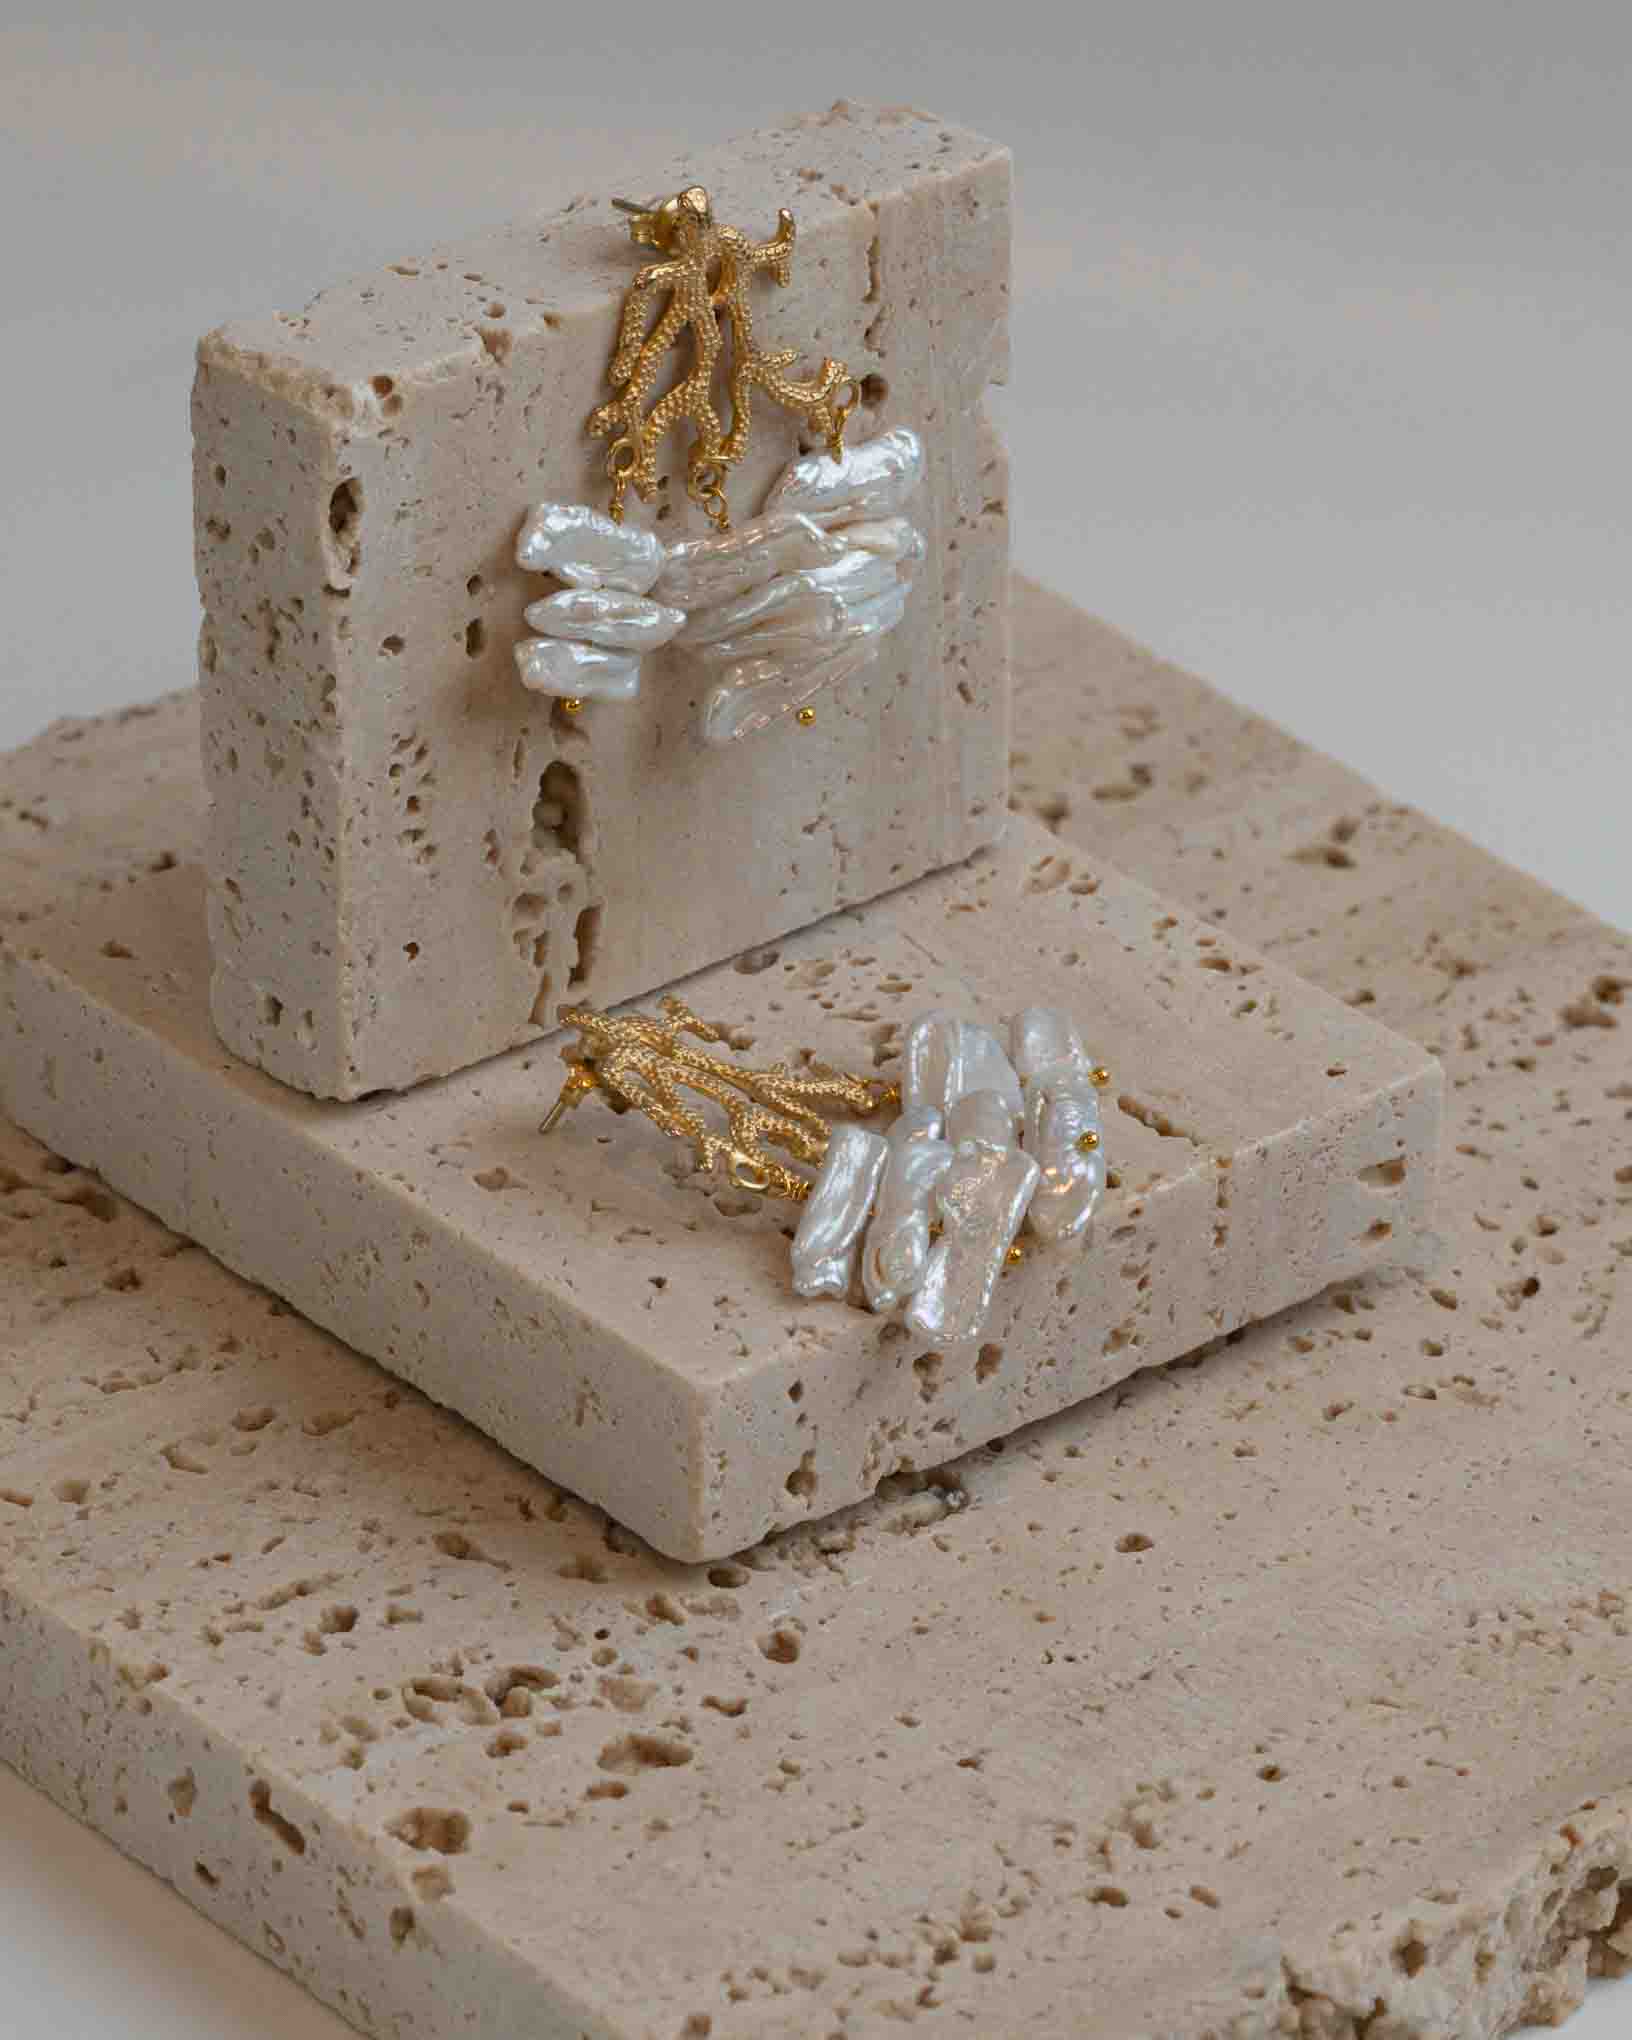 Ohrring Barriera Corallina aus der Kollektion Perle e Coralli von Donna Rachele Jewelry